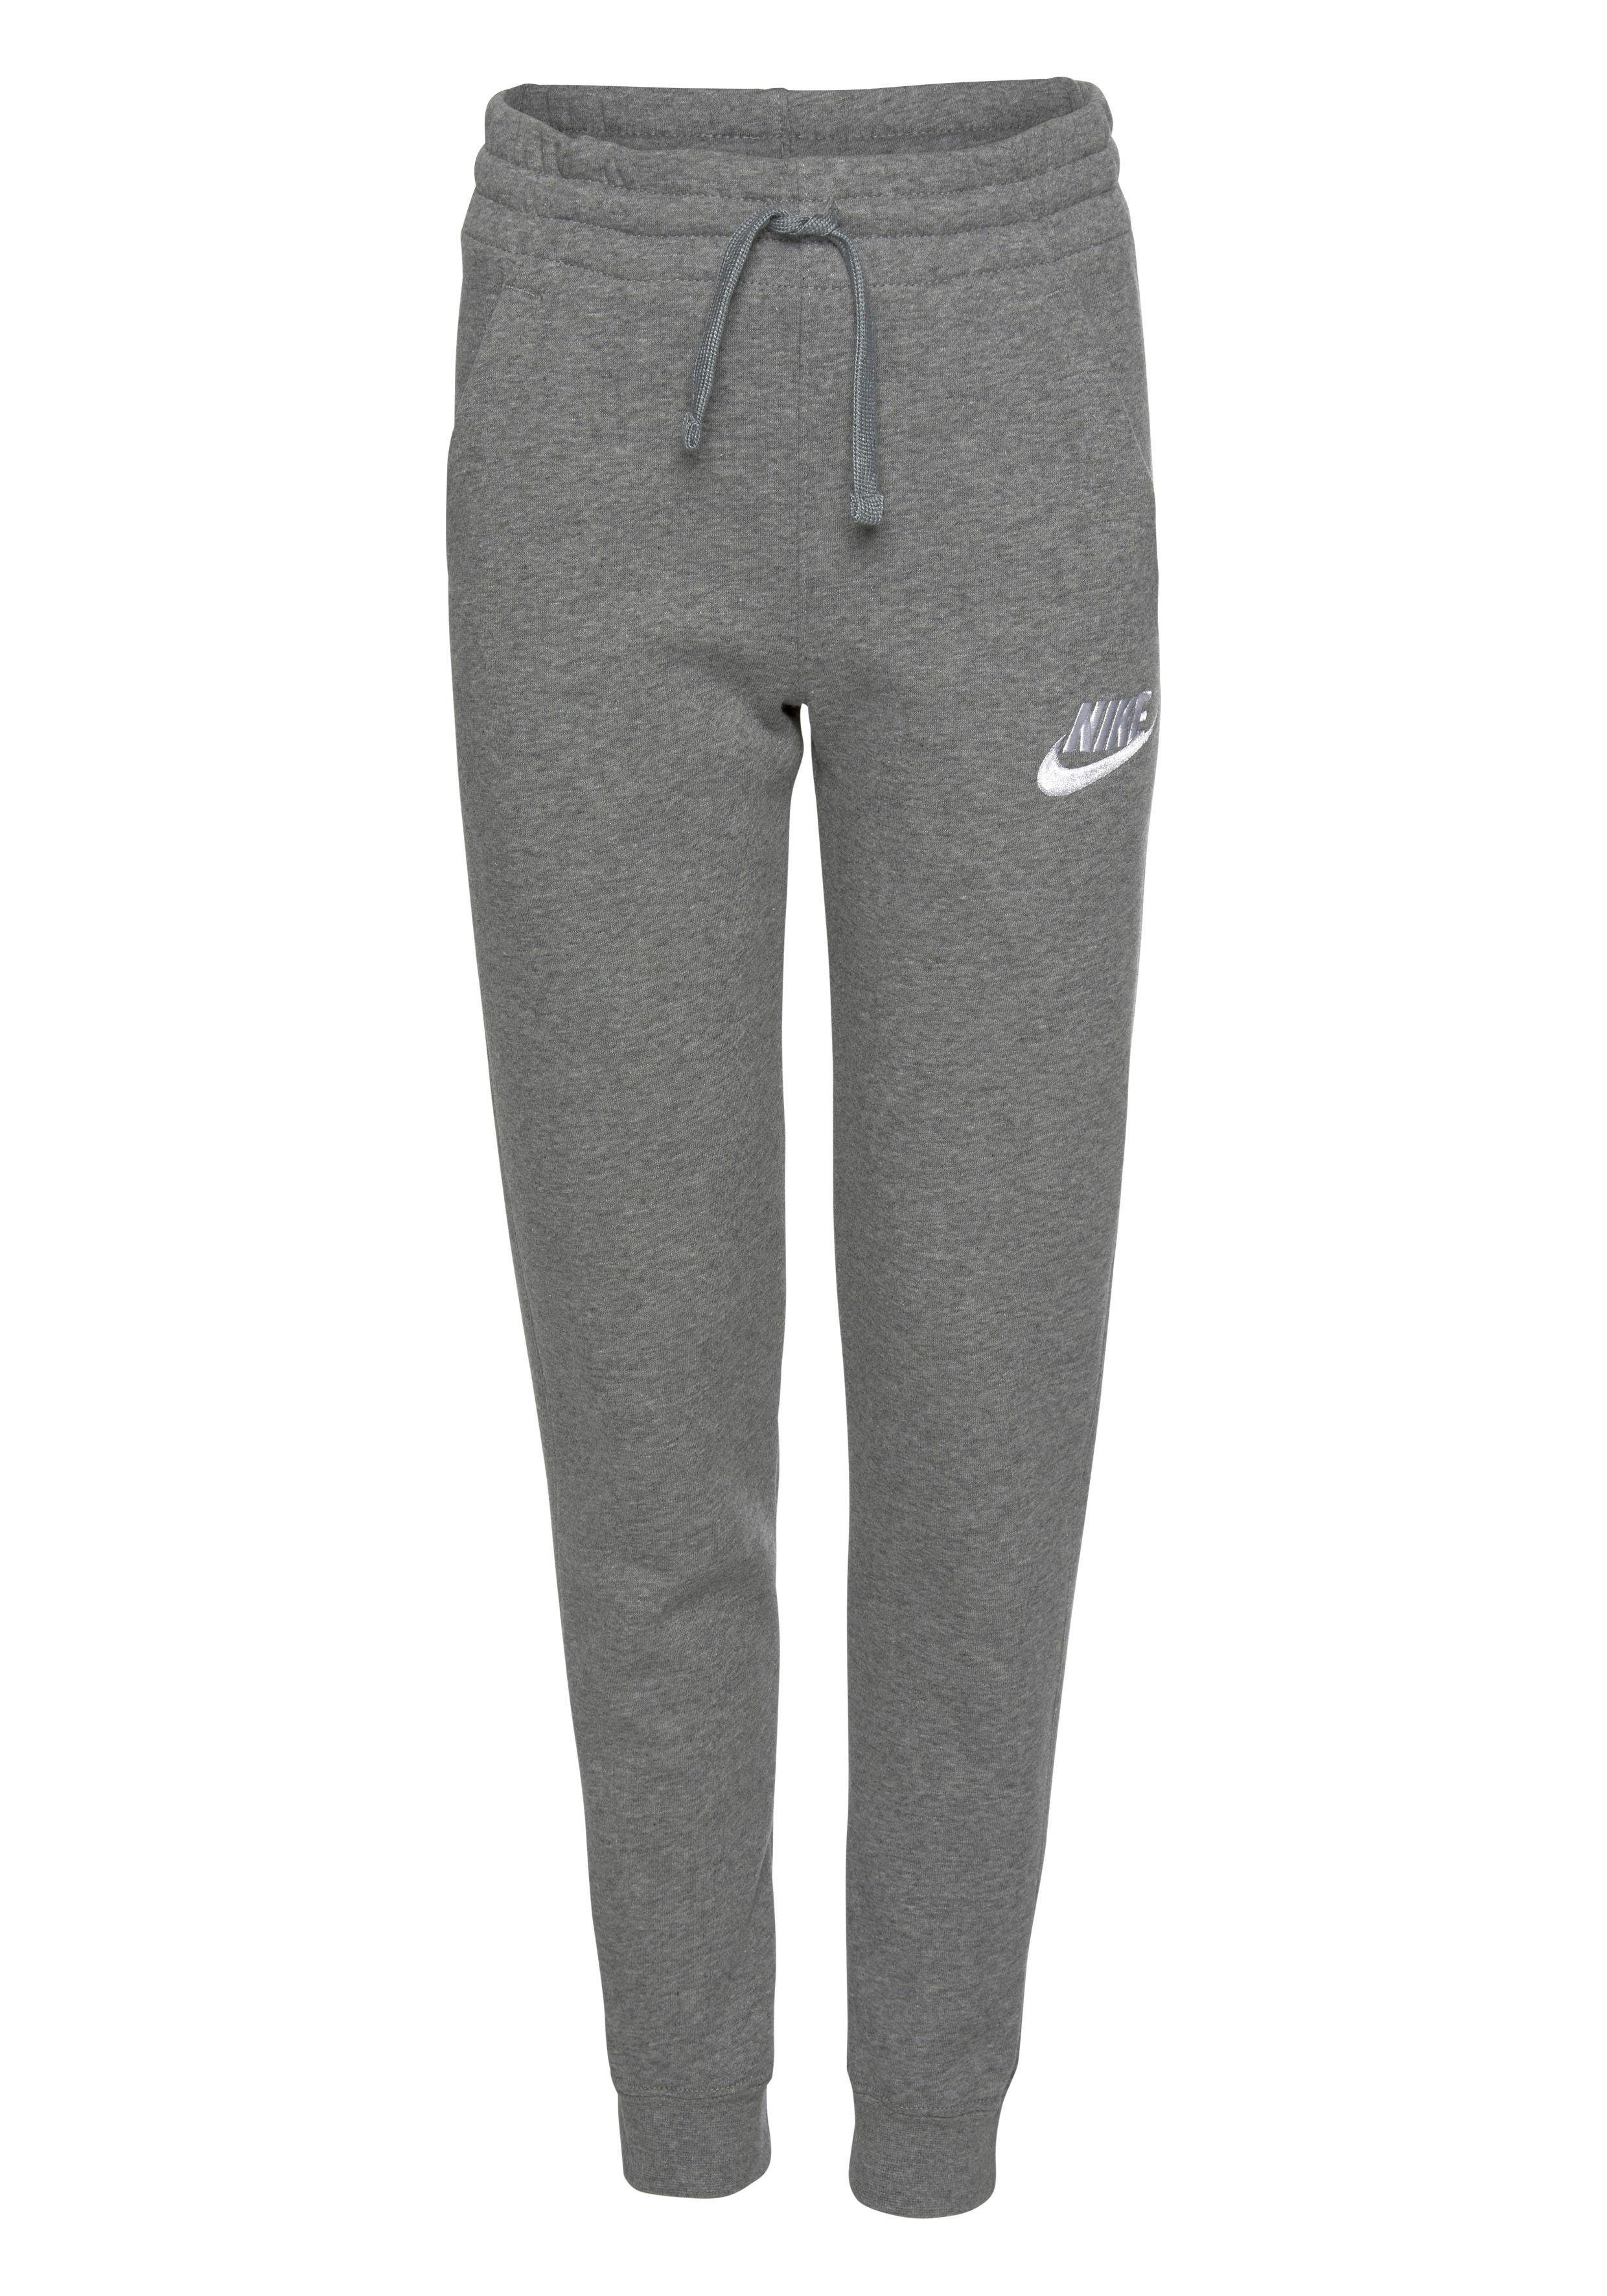 PANT Sportswear FLEECE Nike grau-meliert JOGGER Jogginghose CLUB B NSW